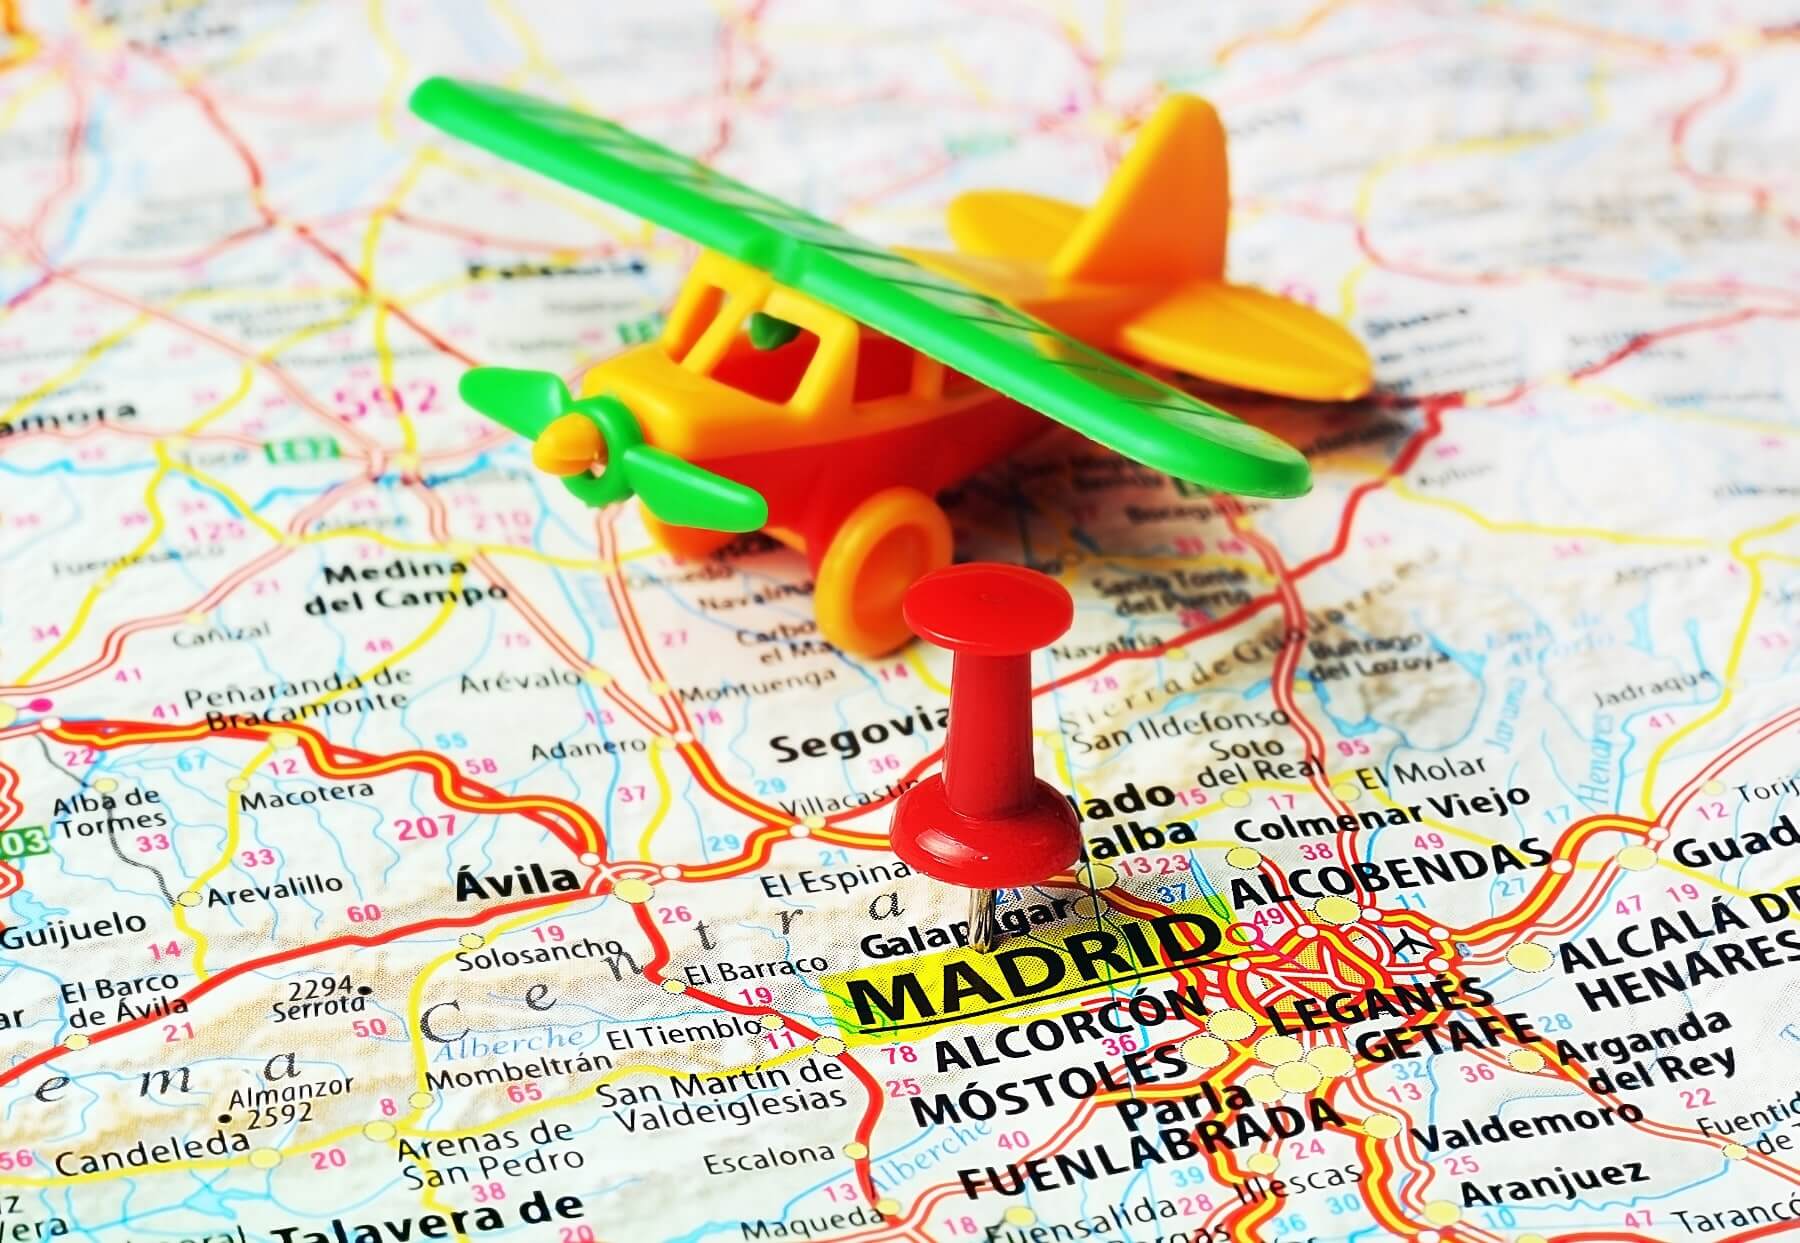 Transports : aller à Madrid